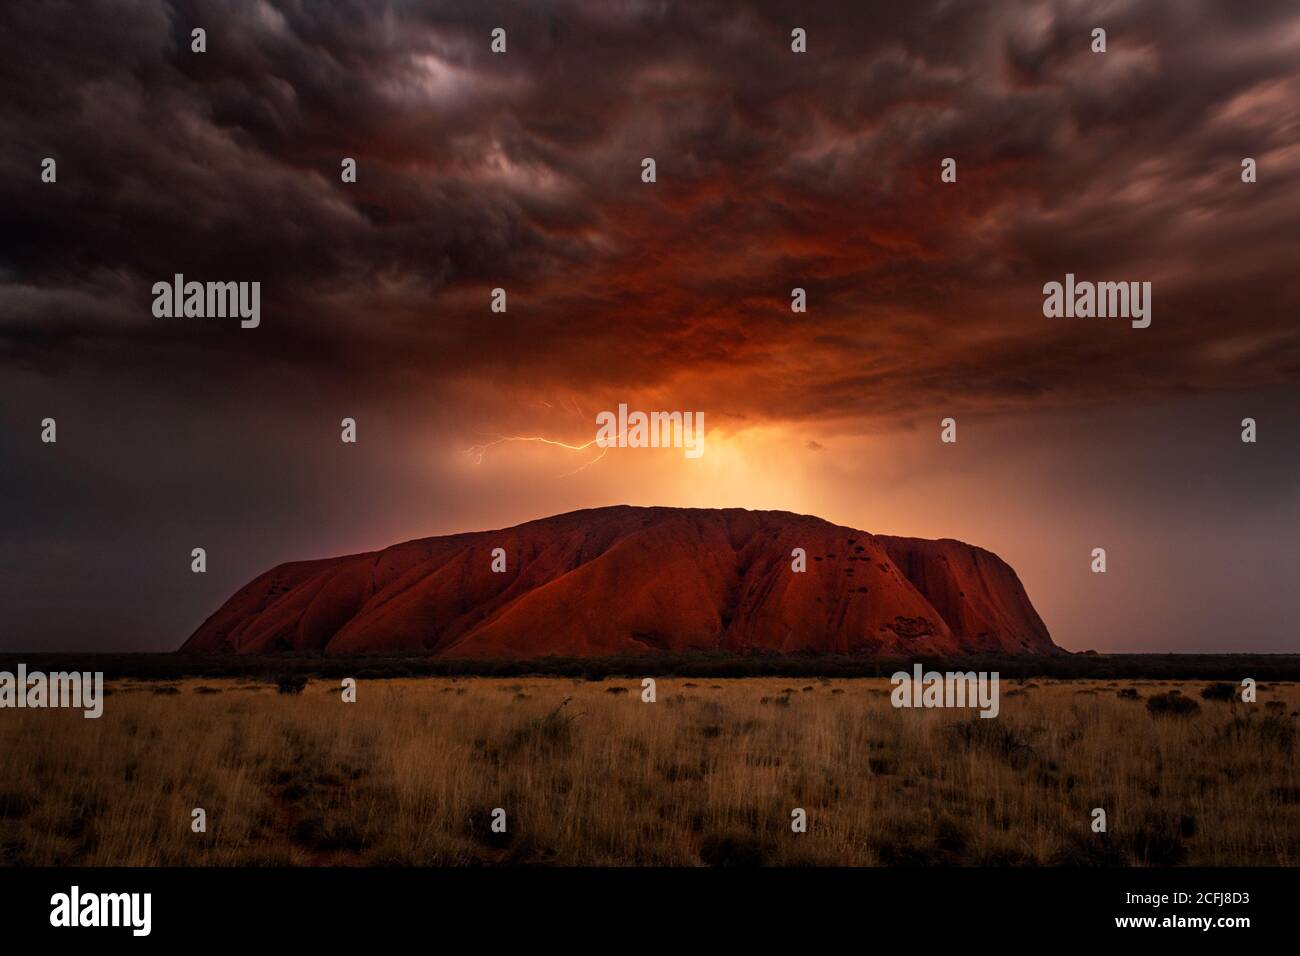 Le tempeste sono una rara vista al famoso Uluru. Foto Stock